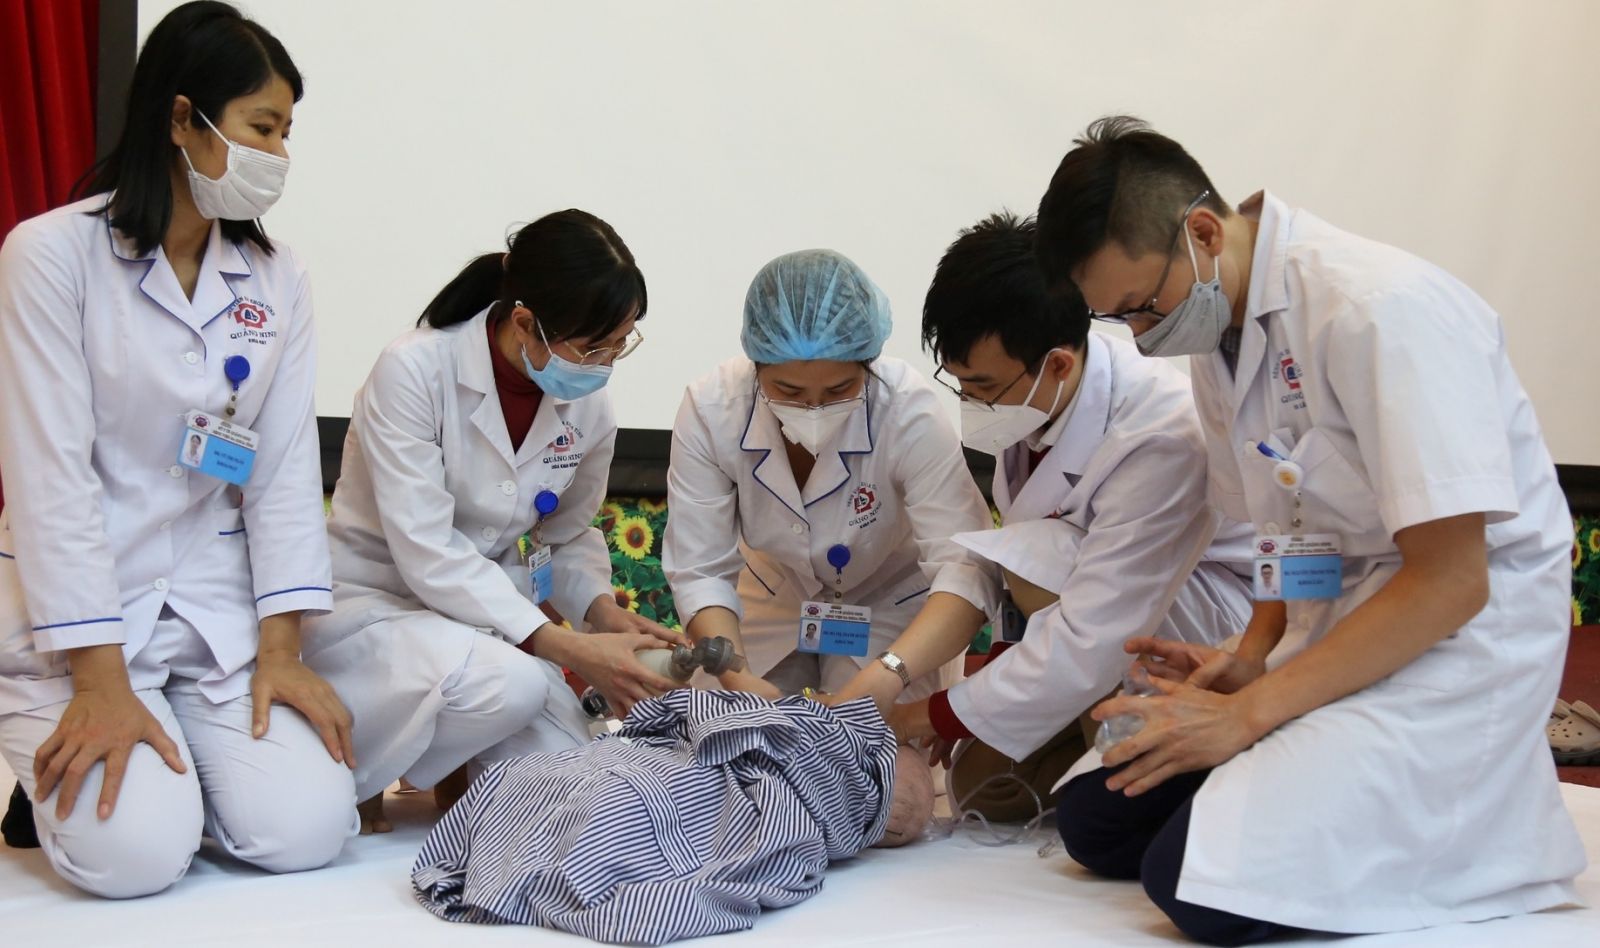 Hôm nay, Việt Nam bắt đầu tiêm vaccine phòng COVID-19 cho trẻ từ 5 - dưới 12 tuổi